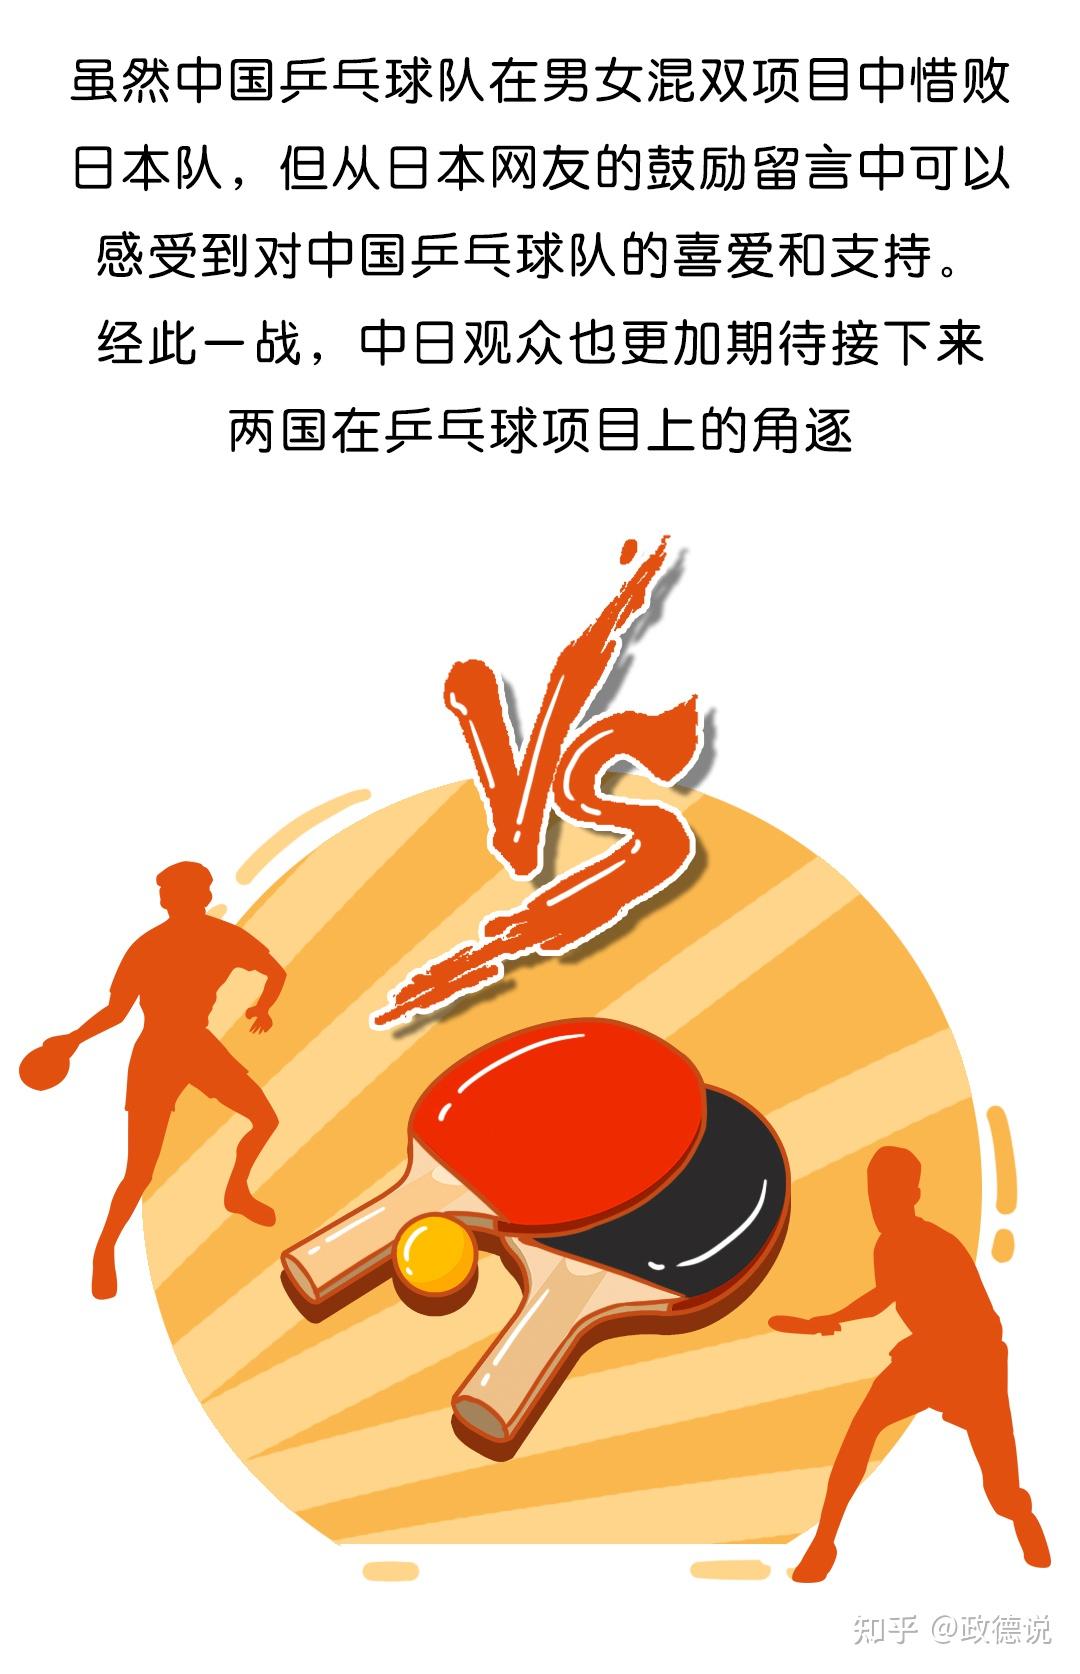 漫画中国乒乓球男女混双惜败日本女单金牌战成焦点